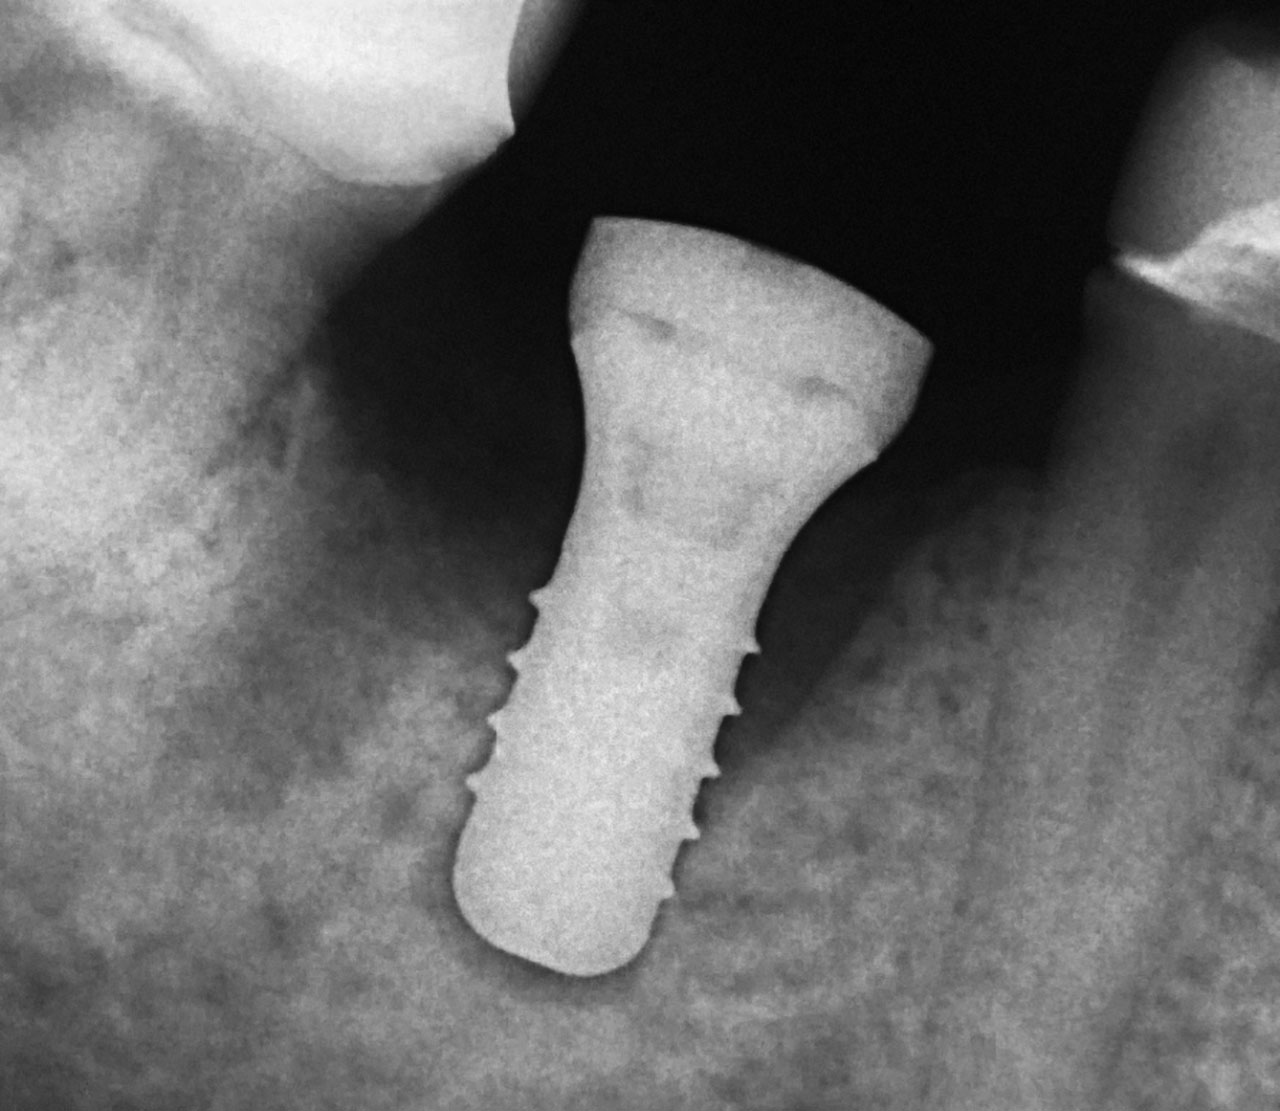 Abb. 10 Die Einzelbildkontrolle nach der Implantatinsertion zeigt korrekte Knochendimensionen um das Implantat. Der radiologisch noch nicht darstellbare Teil des neu organisierten Minerals wird histologisch erkennbar (s. Abb. 12a bis c).